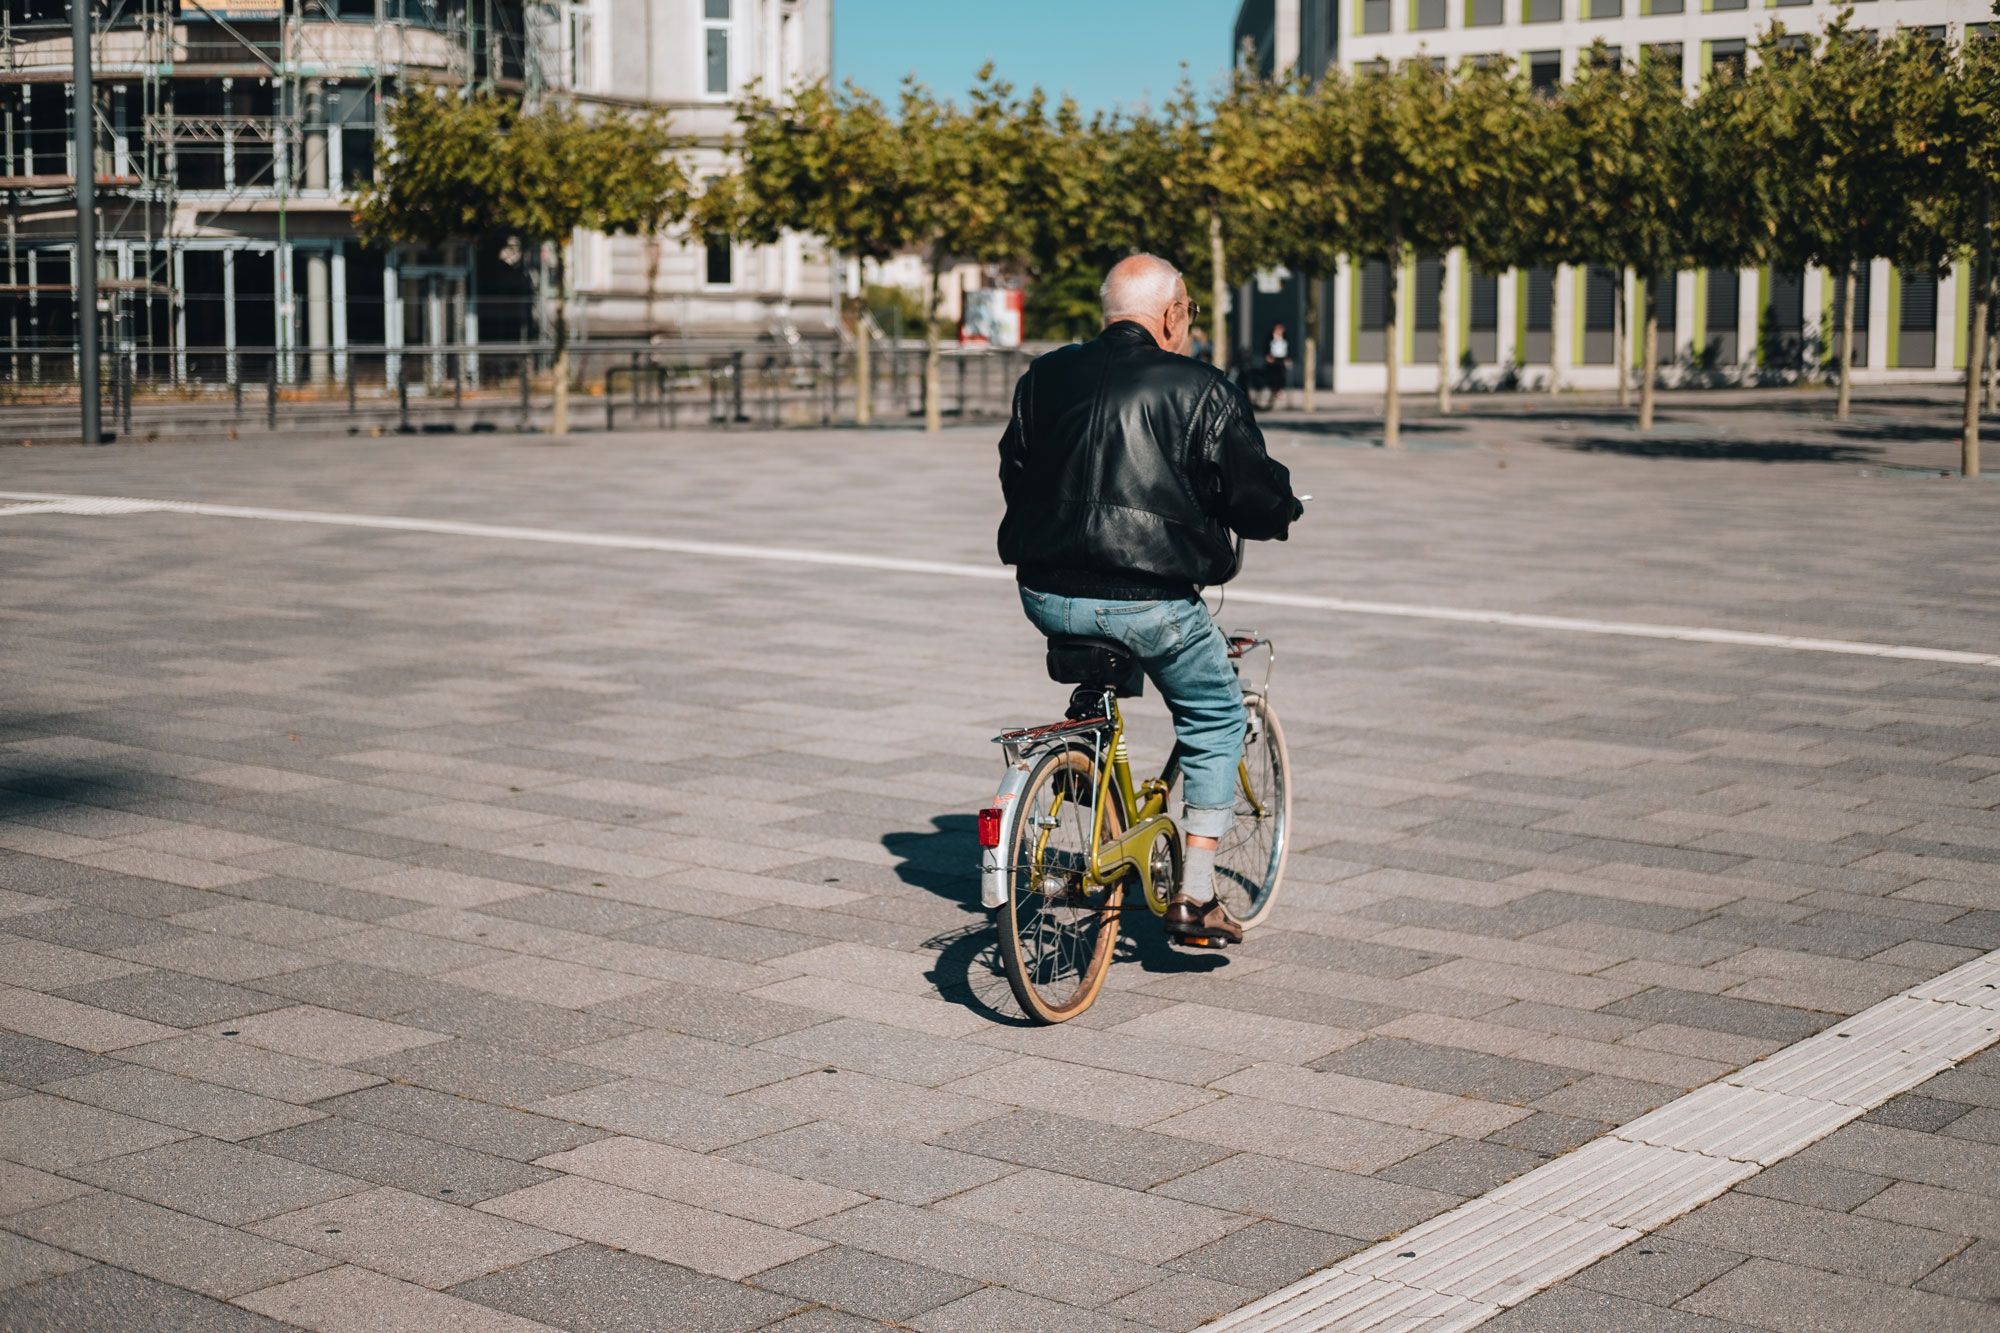 Ein älterer Mann auf einem gelben Fahrrad fährt über einen asphaltierten Platz.